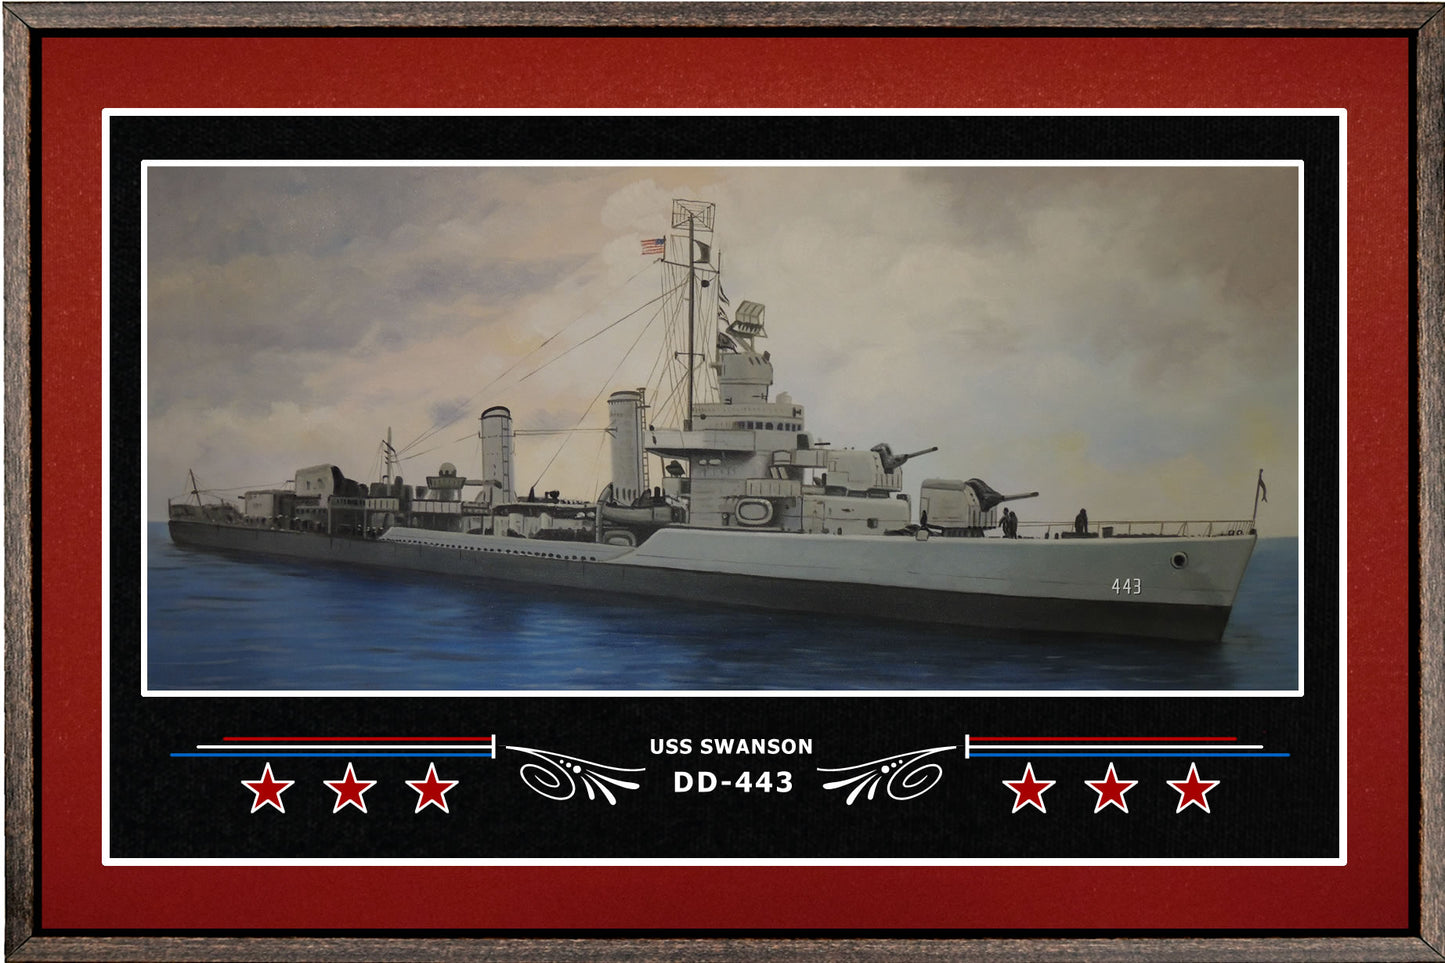 USS SWANSON DD 443 BOX FRAMED CANVAS ART BURGUNDY